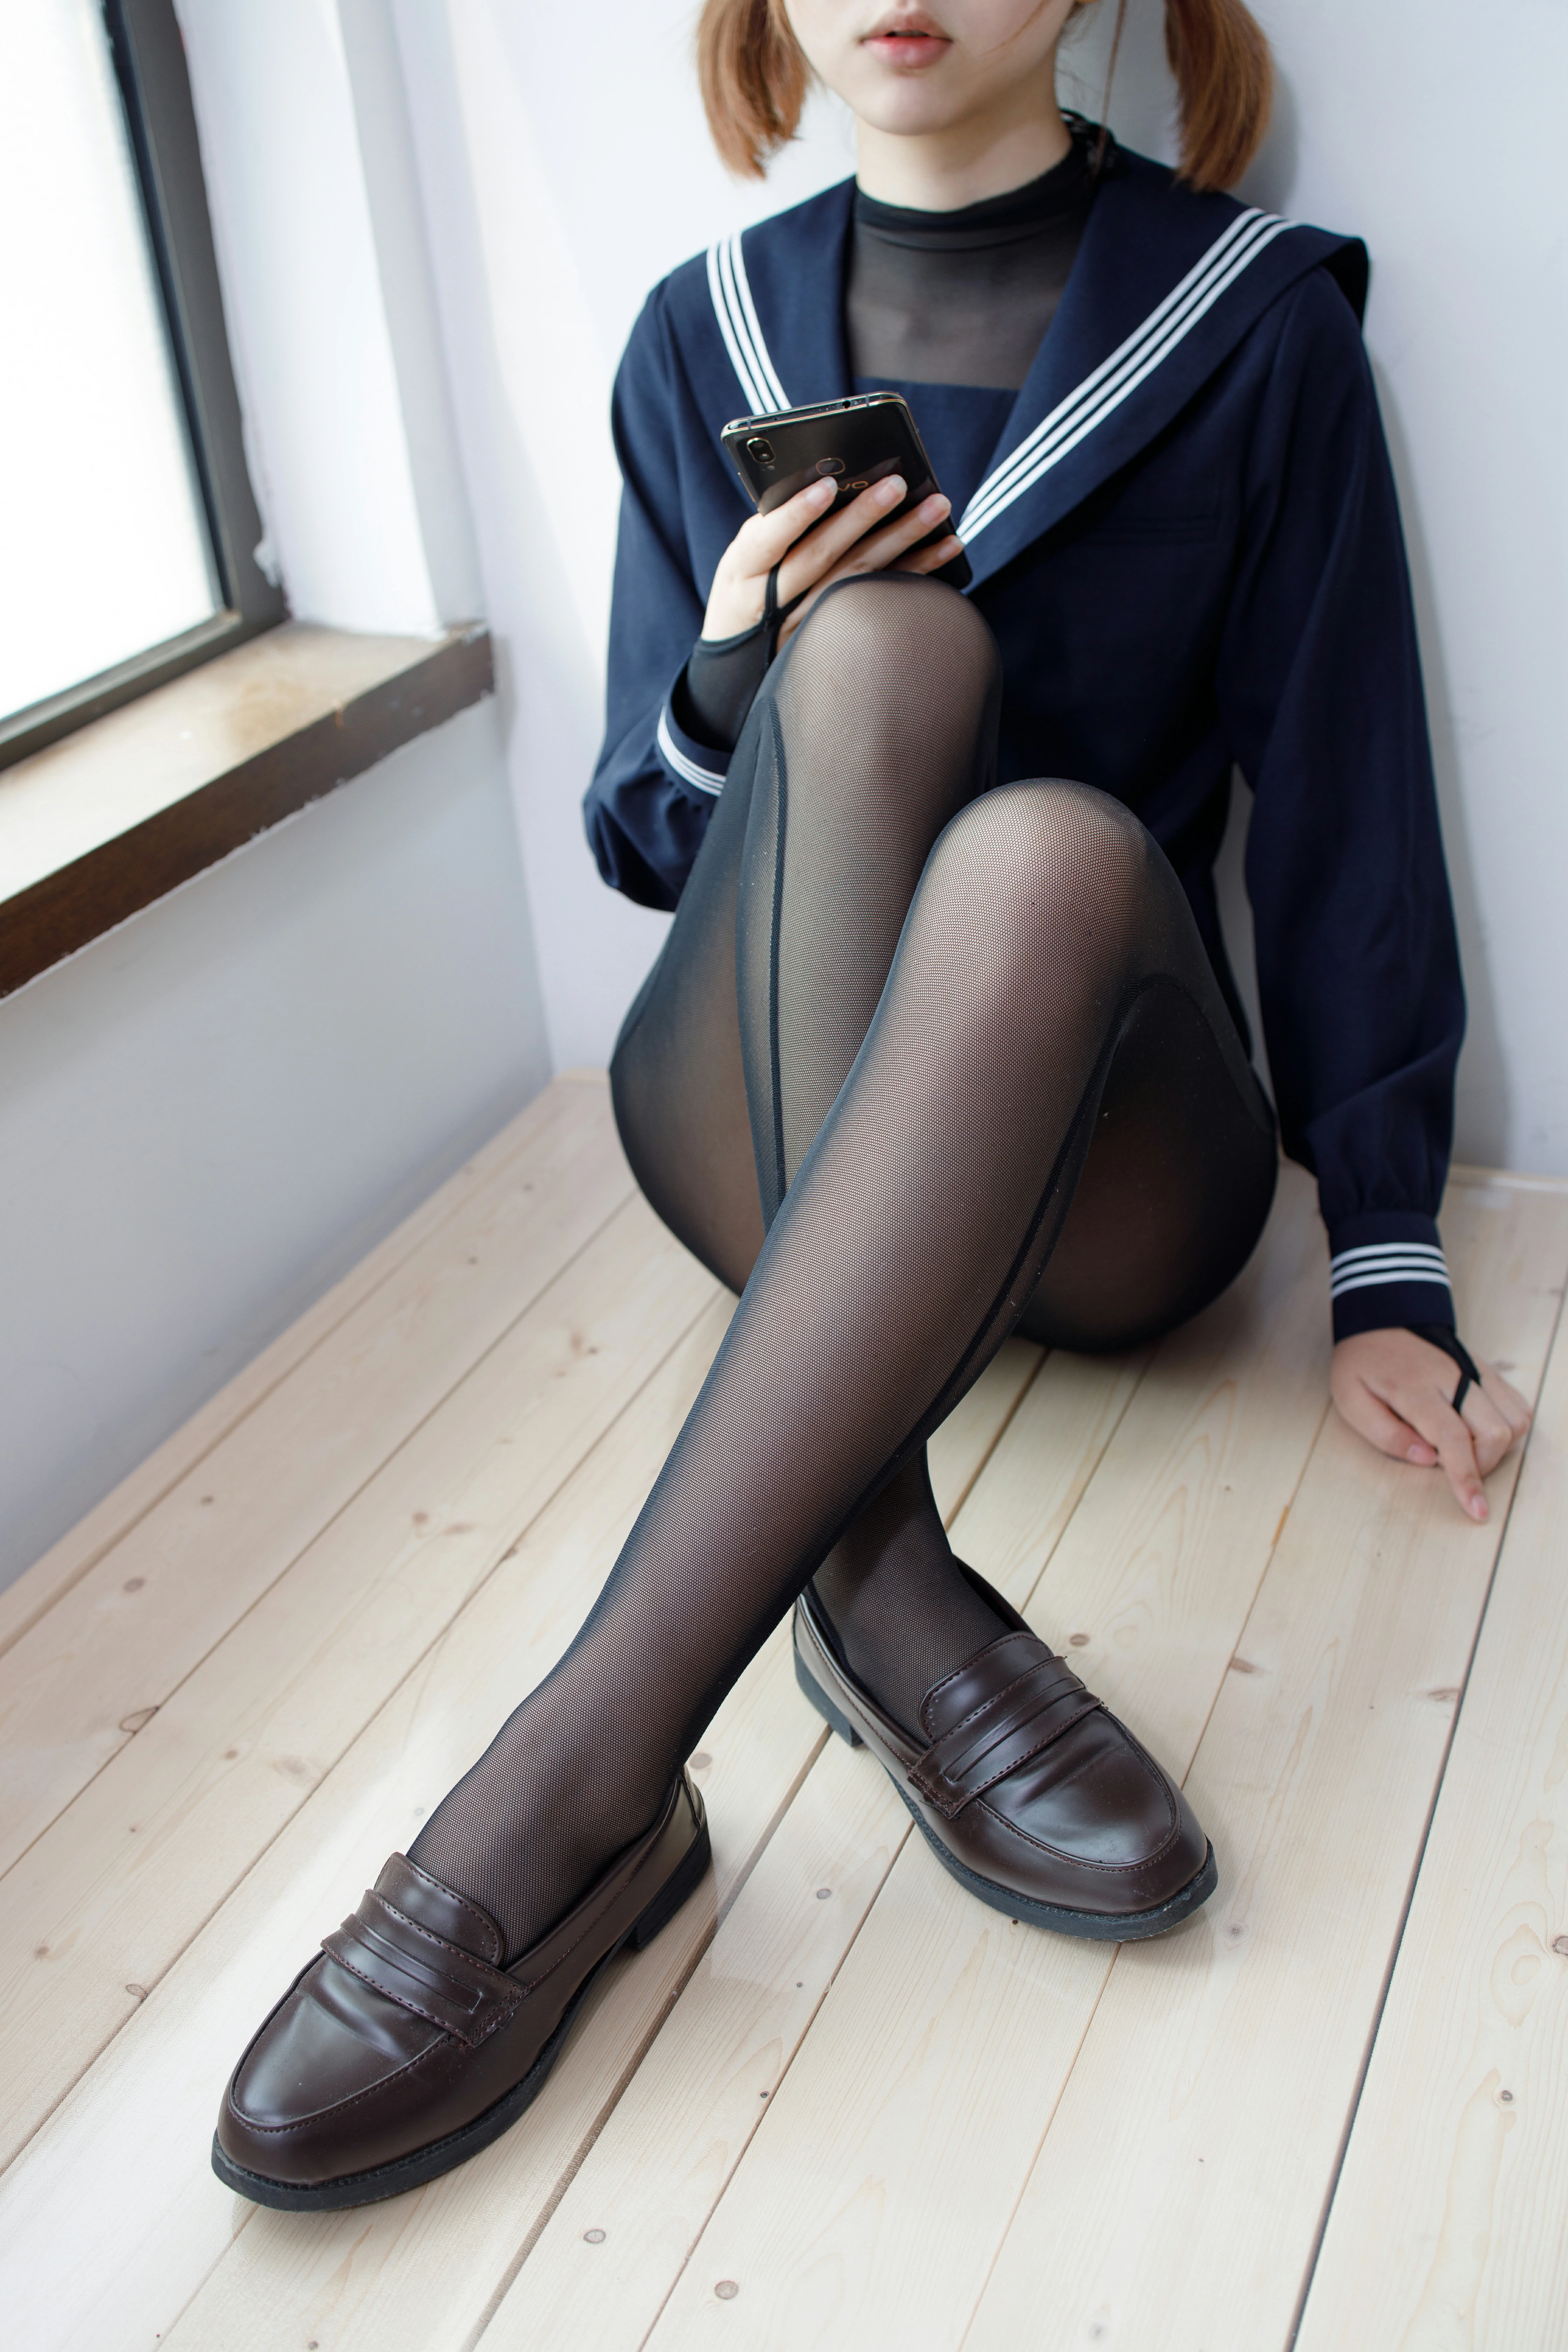 [森萝财团]WTMSB-003 性感小萝莉 蓝色高中女生制服加黑色丝袜美腿私房写真集,